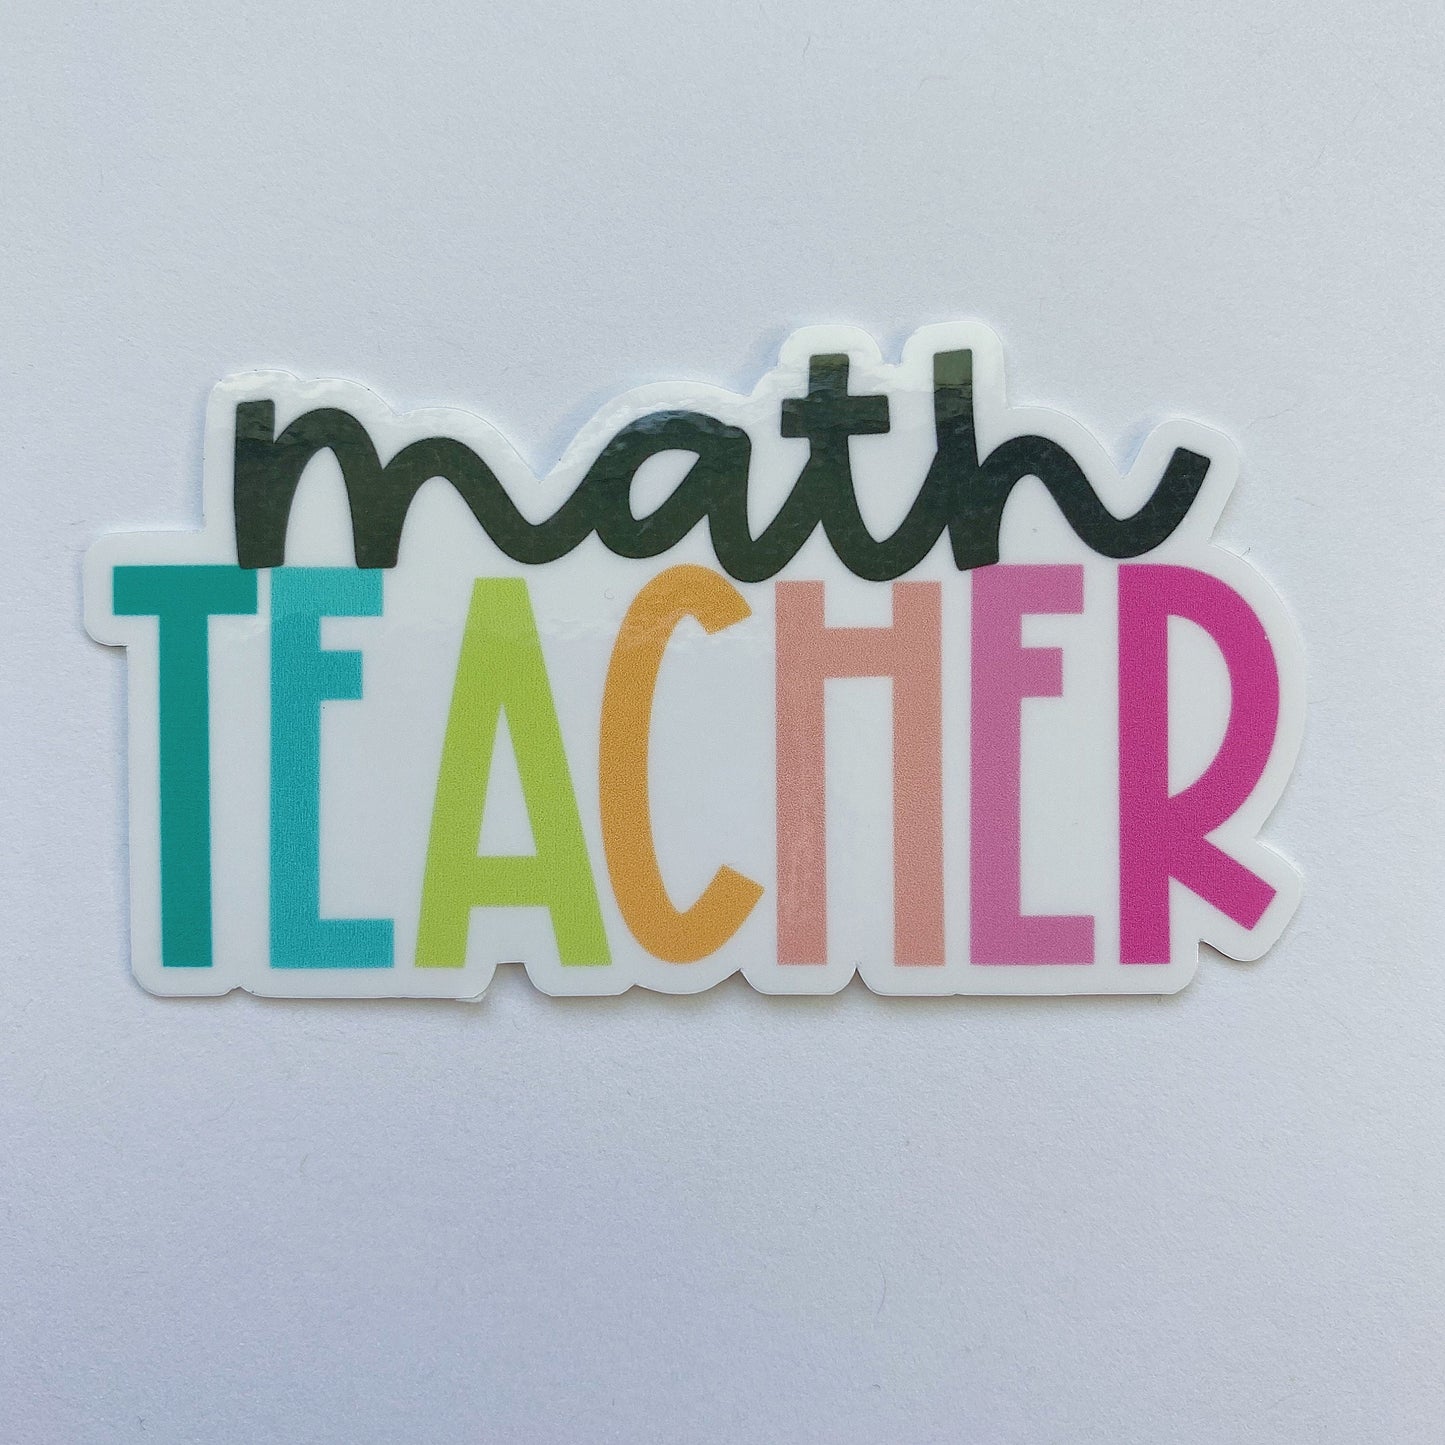 Math Teacher Sticker